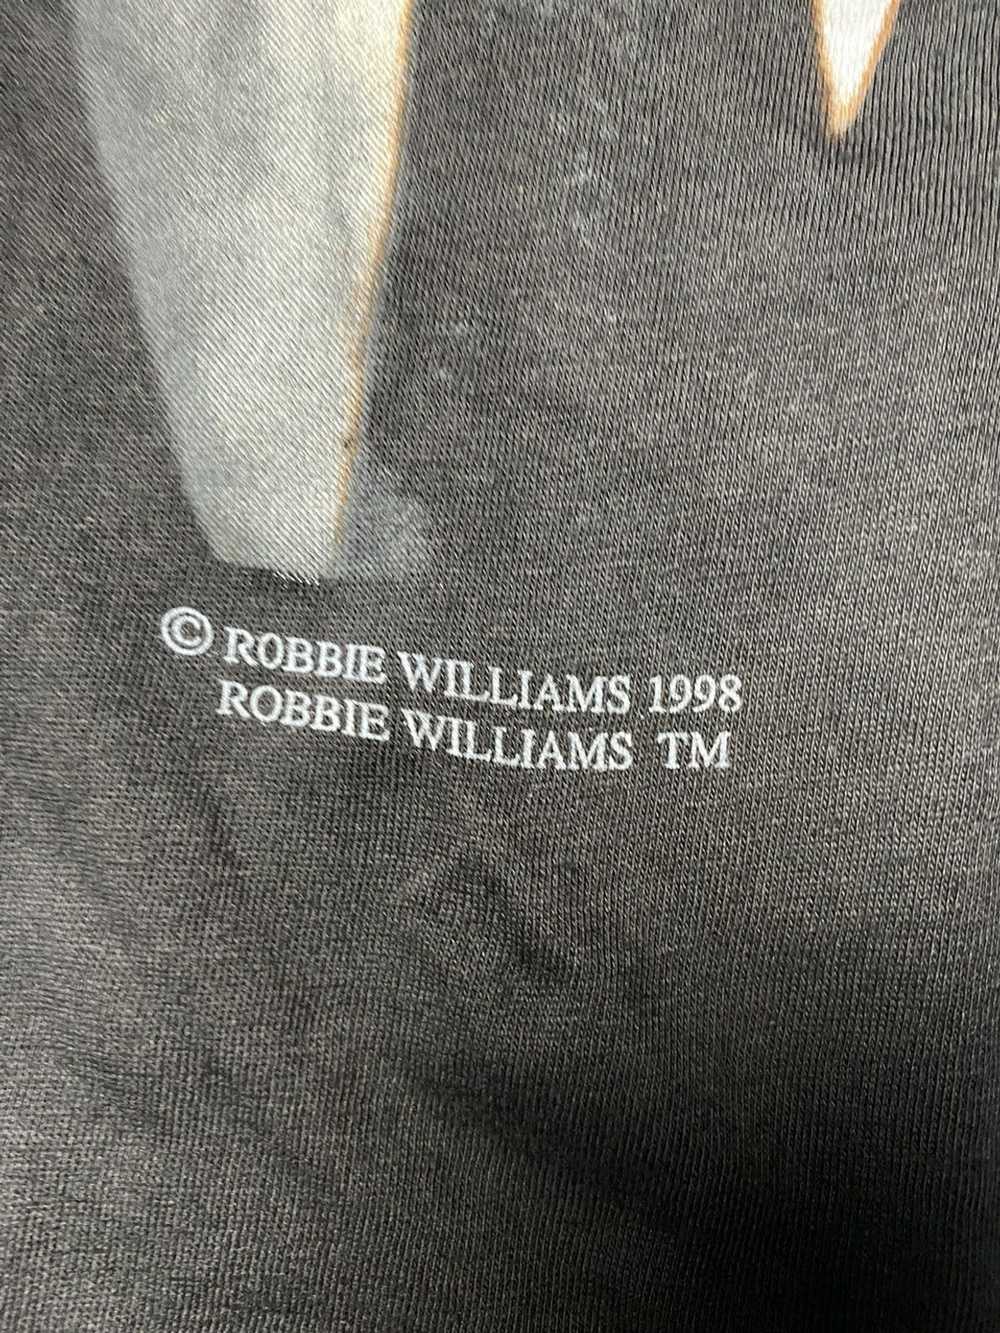 Tour Tee × Vintage Vintage robbie williams 1998 - image 3